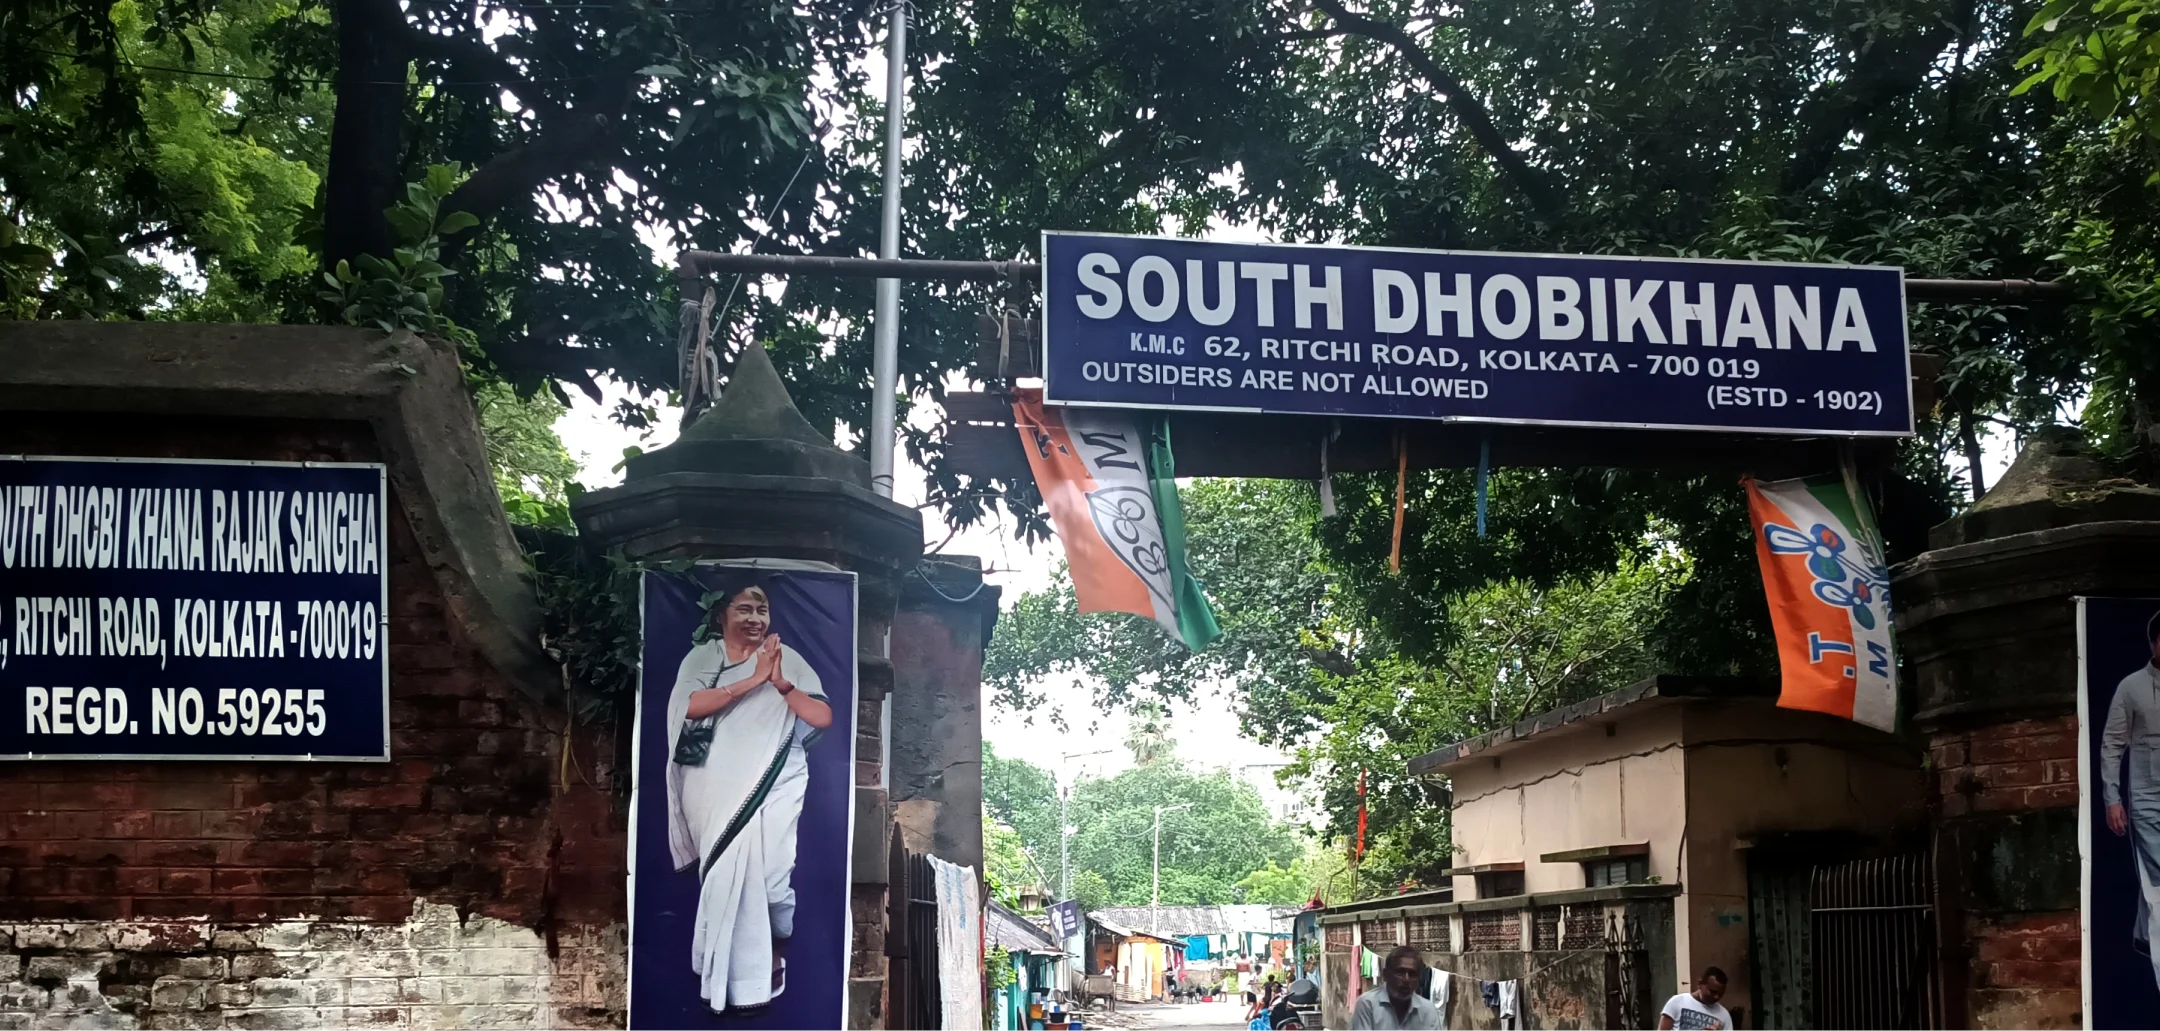 South Dhobikhana of Kolkata